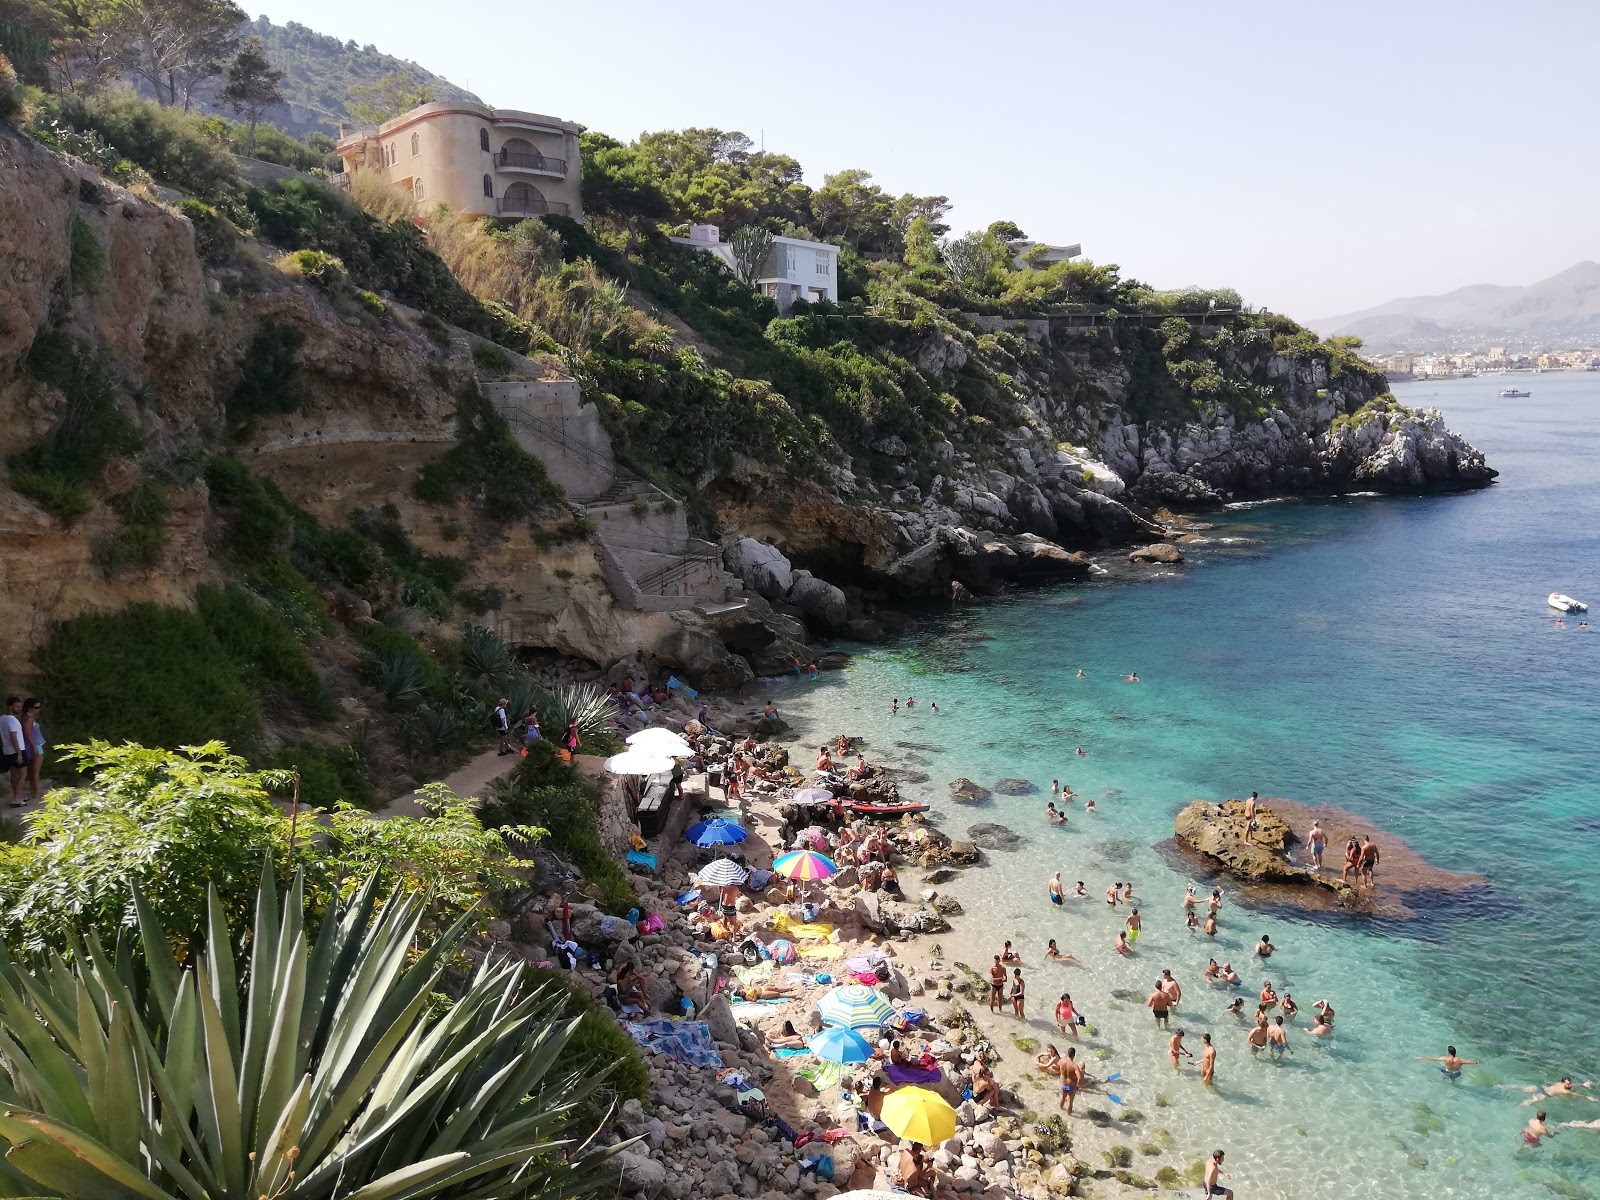 Foto de Spiaggia dei Francesi localizado em área natural